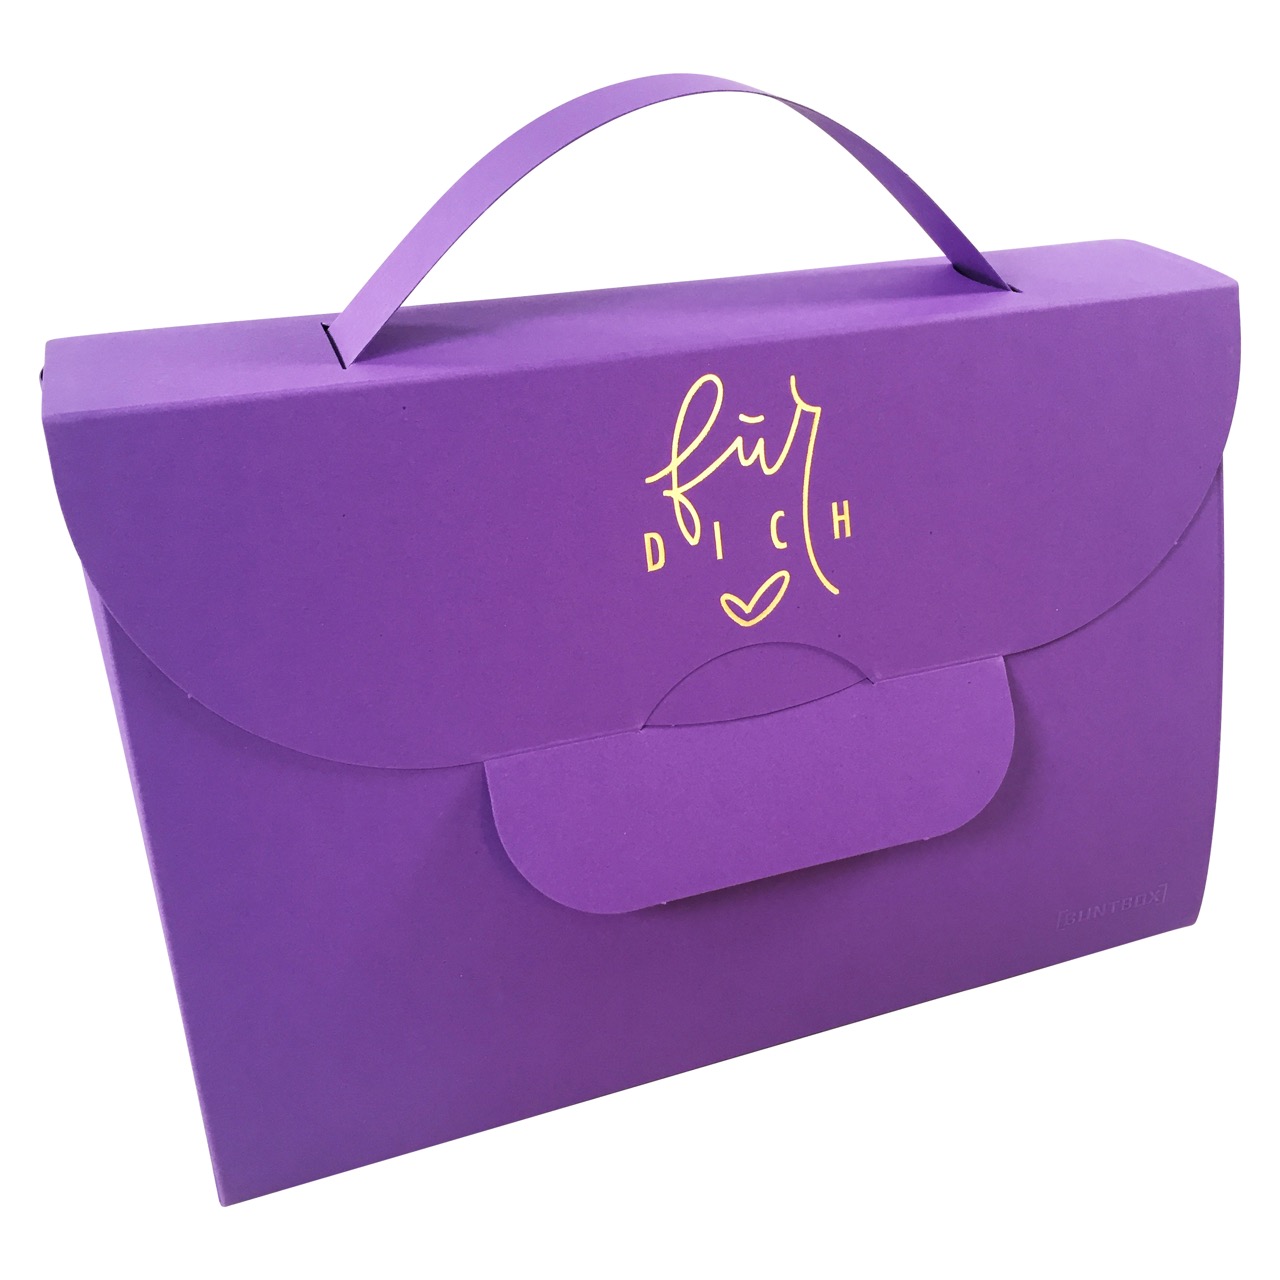 Buntbox Handbag XL Für Dich